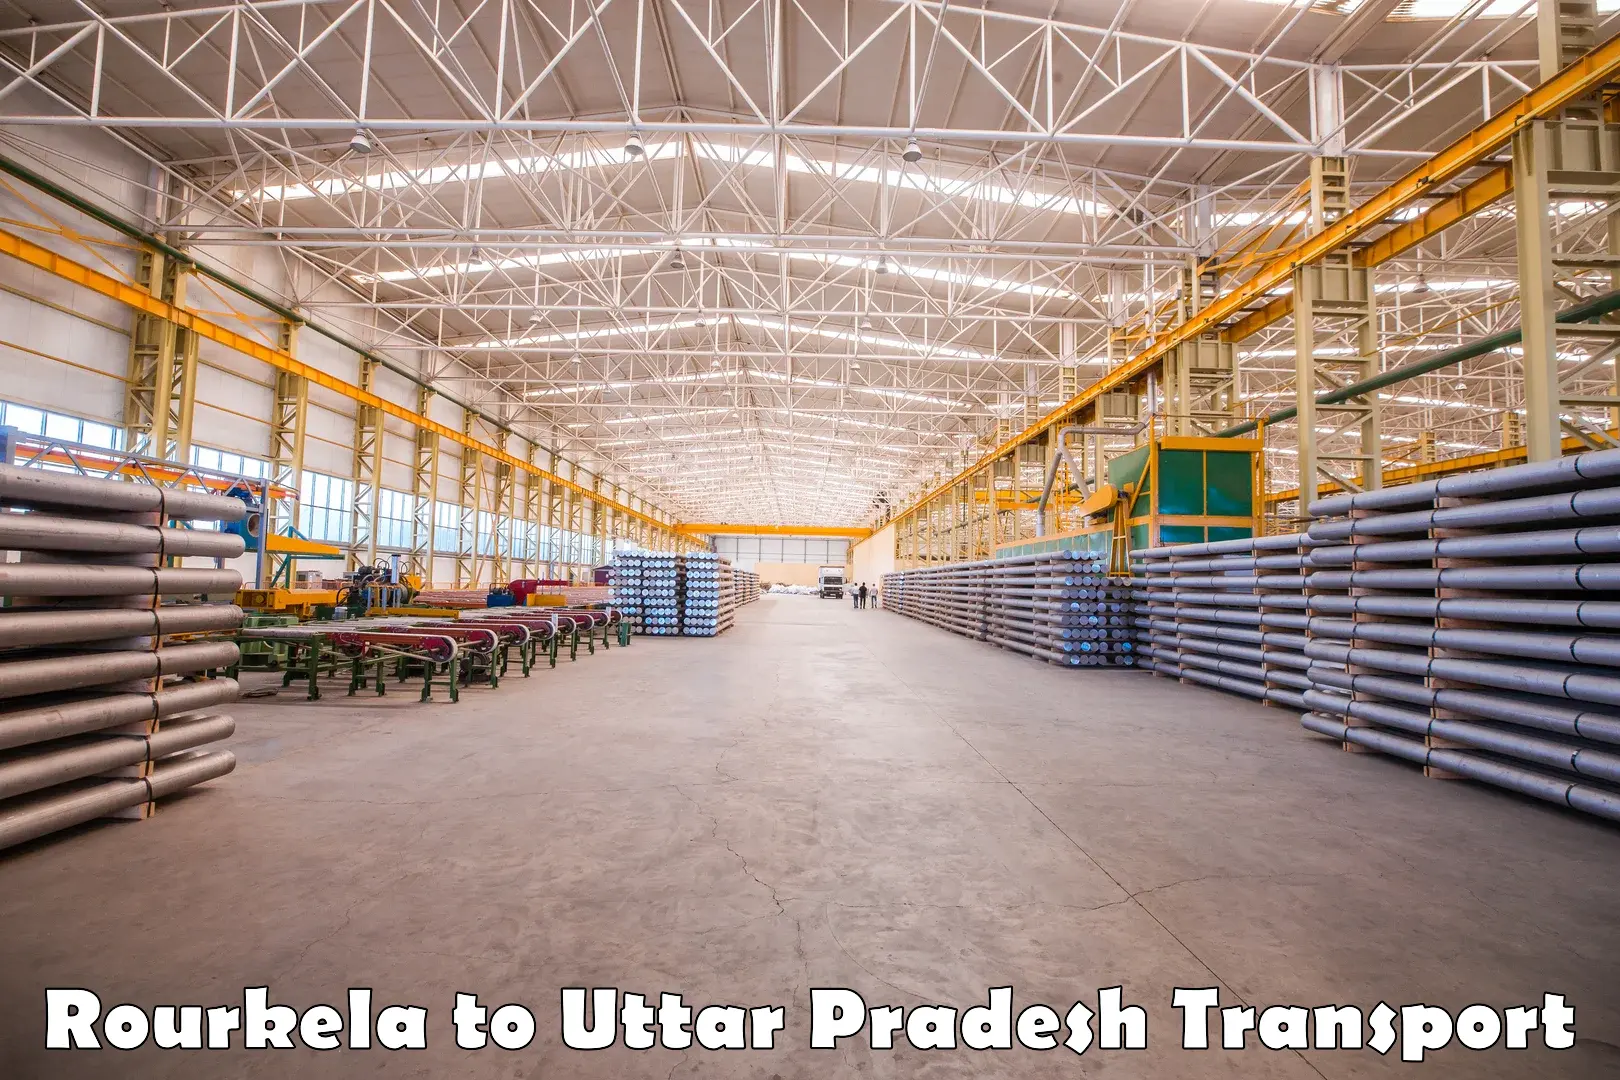 Cargo train transport services Rourkela to Uttar Pradesh